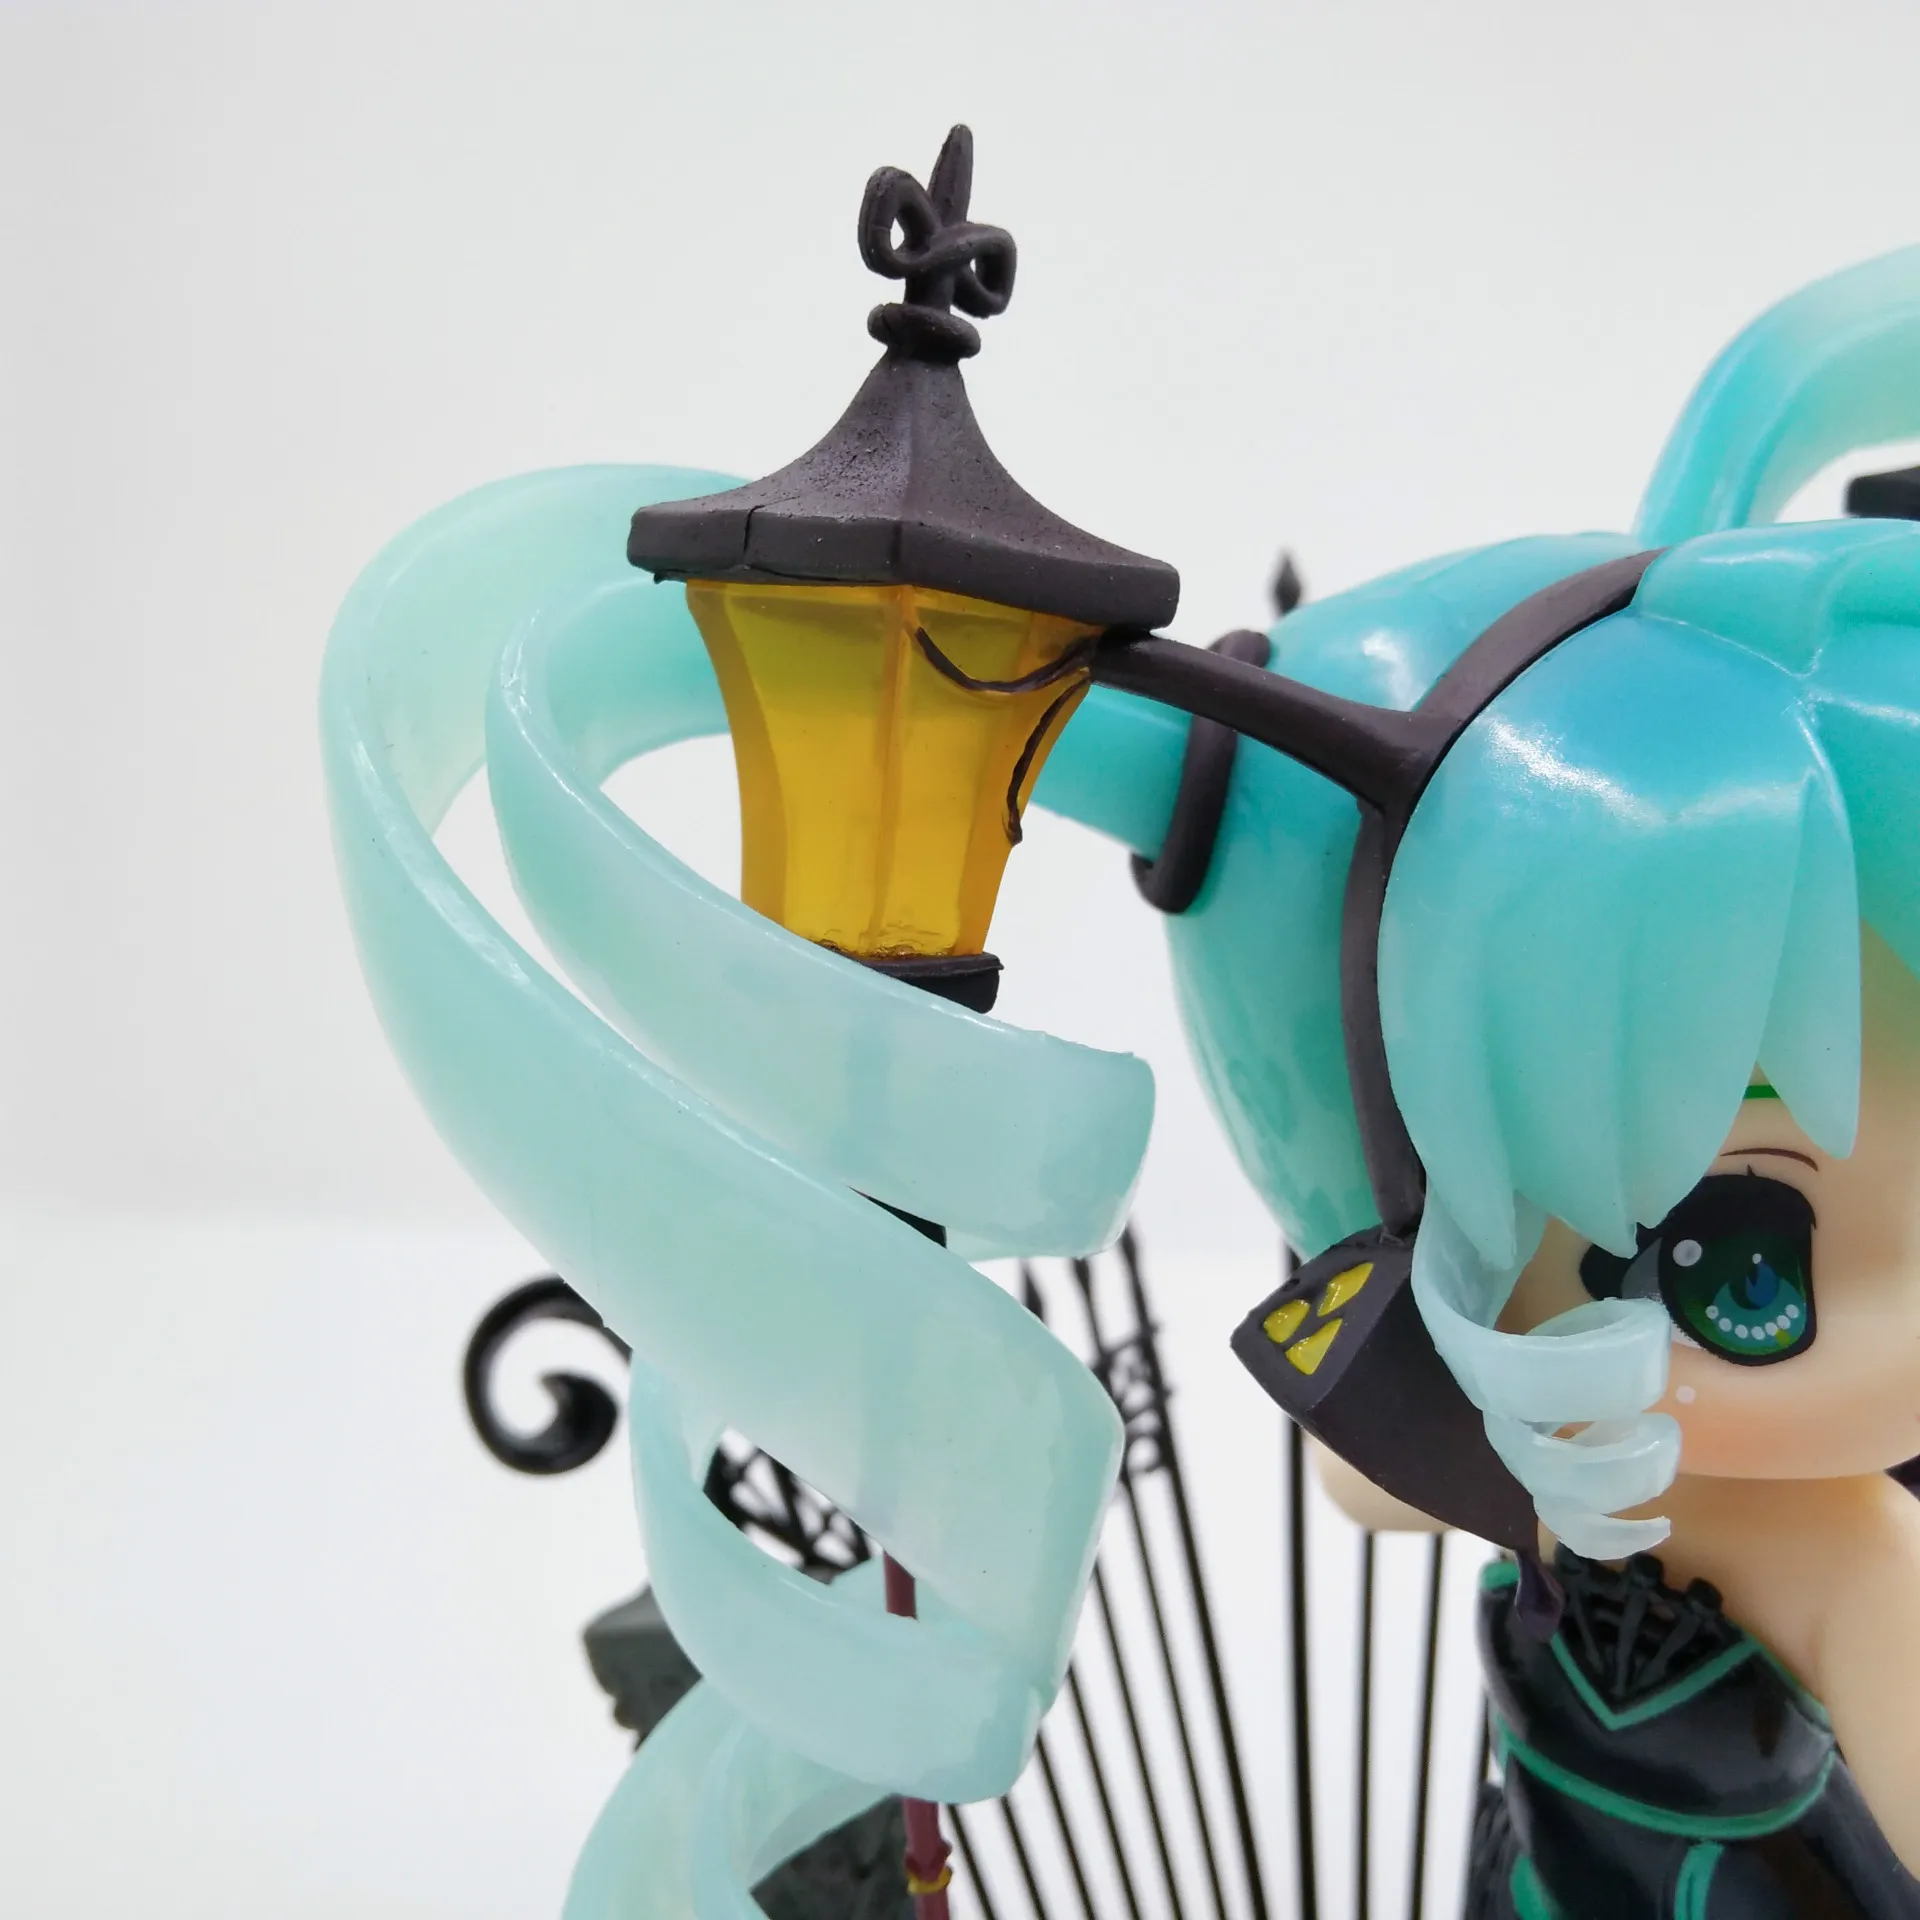 15 см Япония VOCALOID Hatsune Miku Аниме Фигурка мини лампа подвиг версия модели ПВХ Коллекция креативное украшение куклы Brinquedos